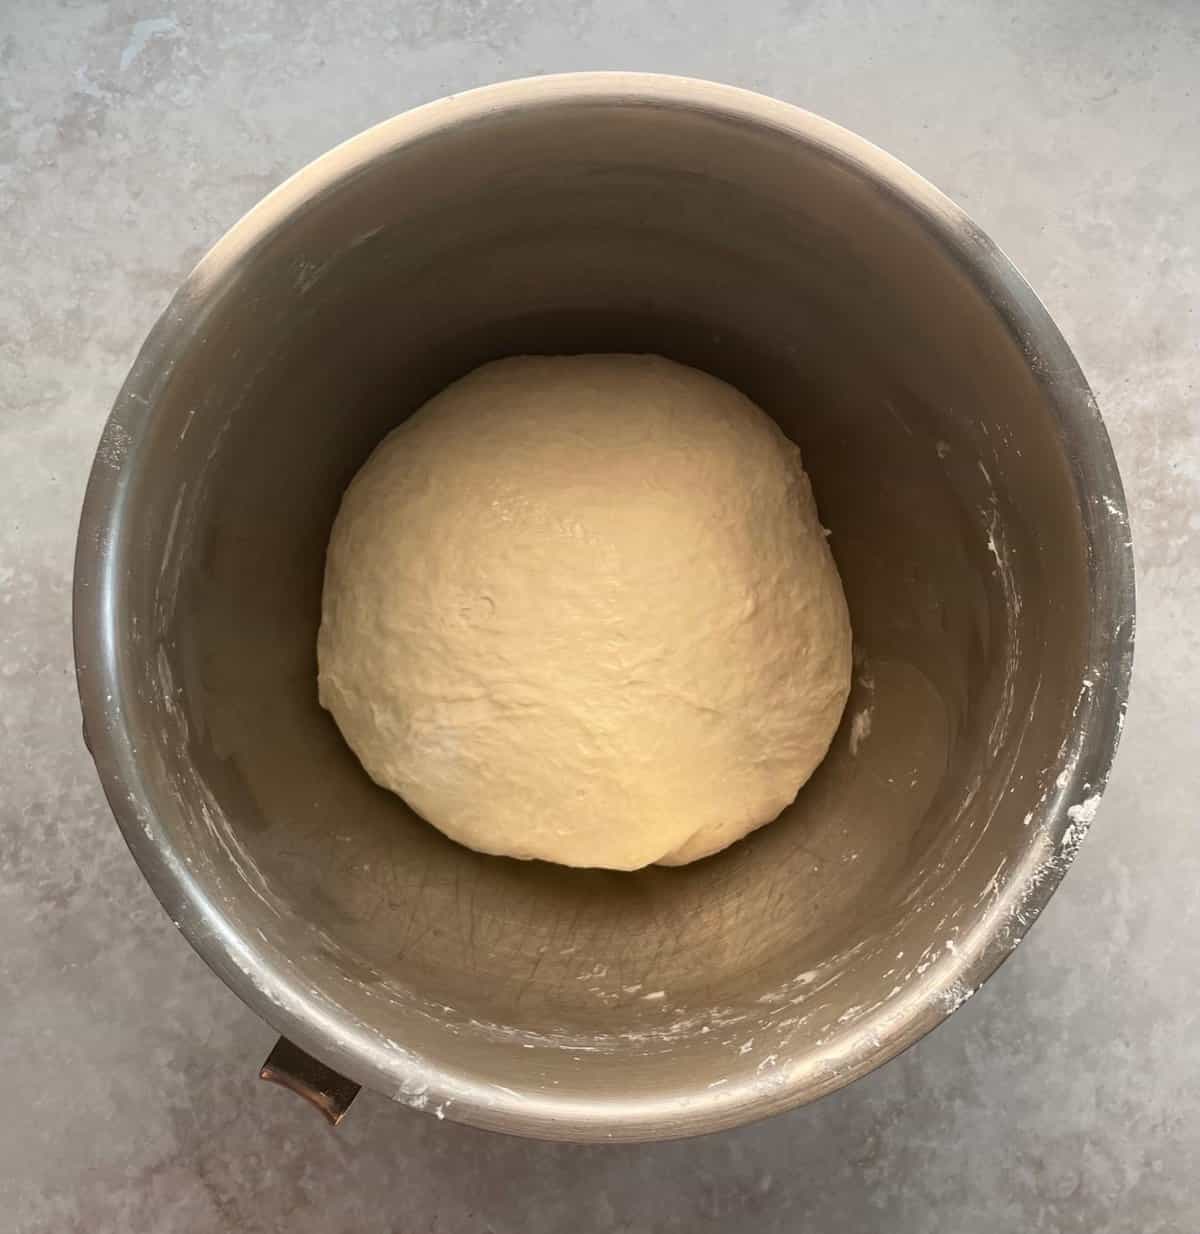 unrisen pizza dough boule in a mixing bowl.